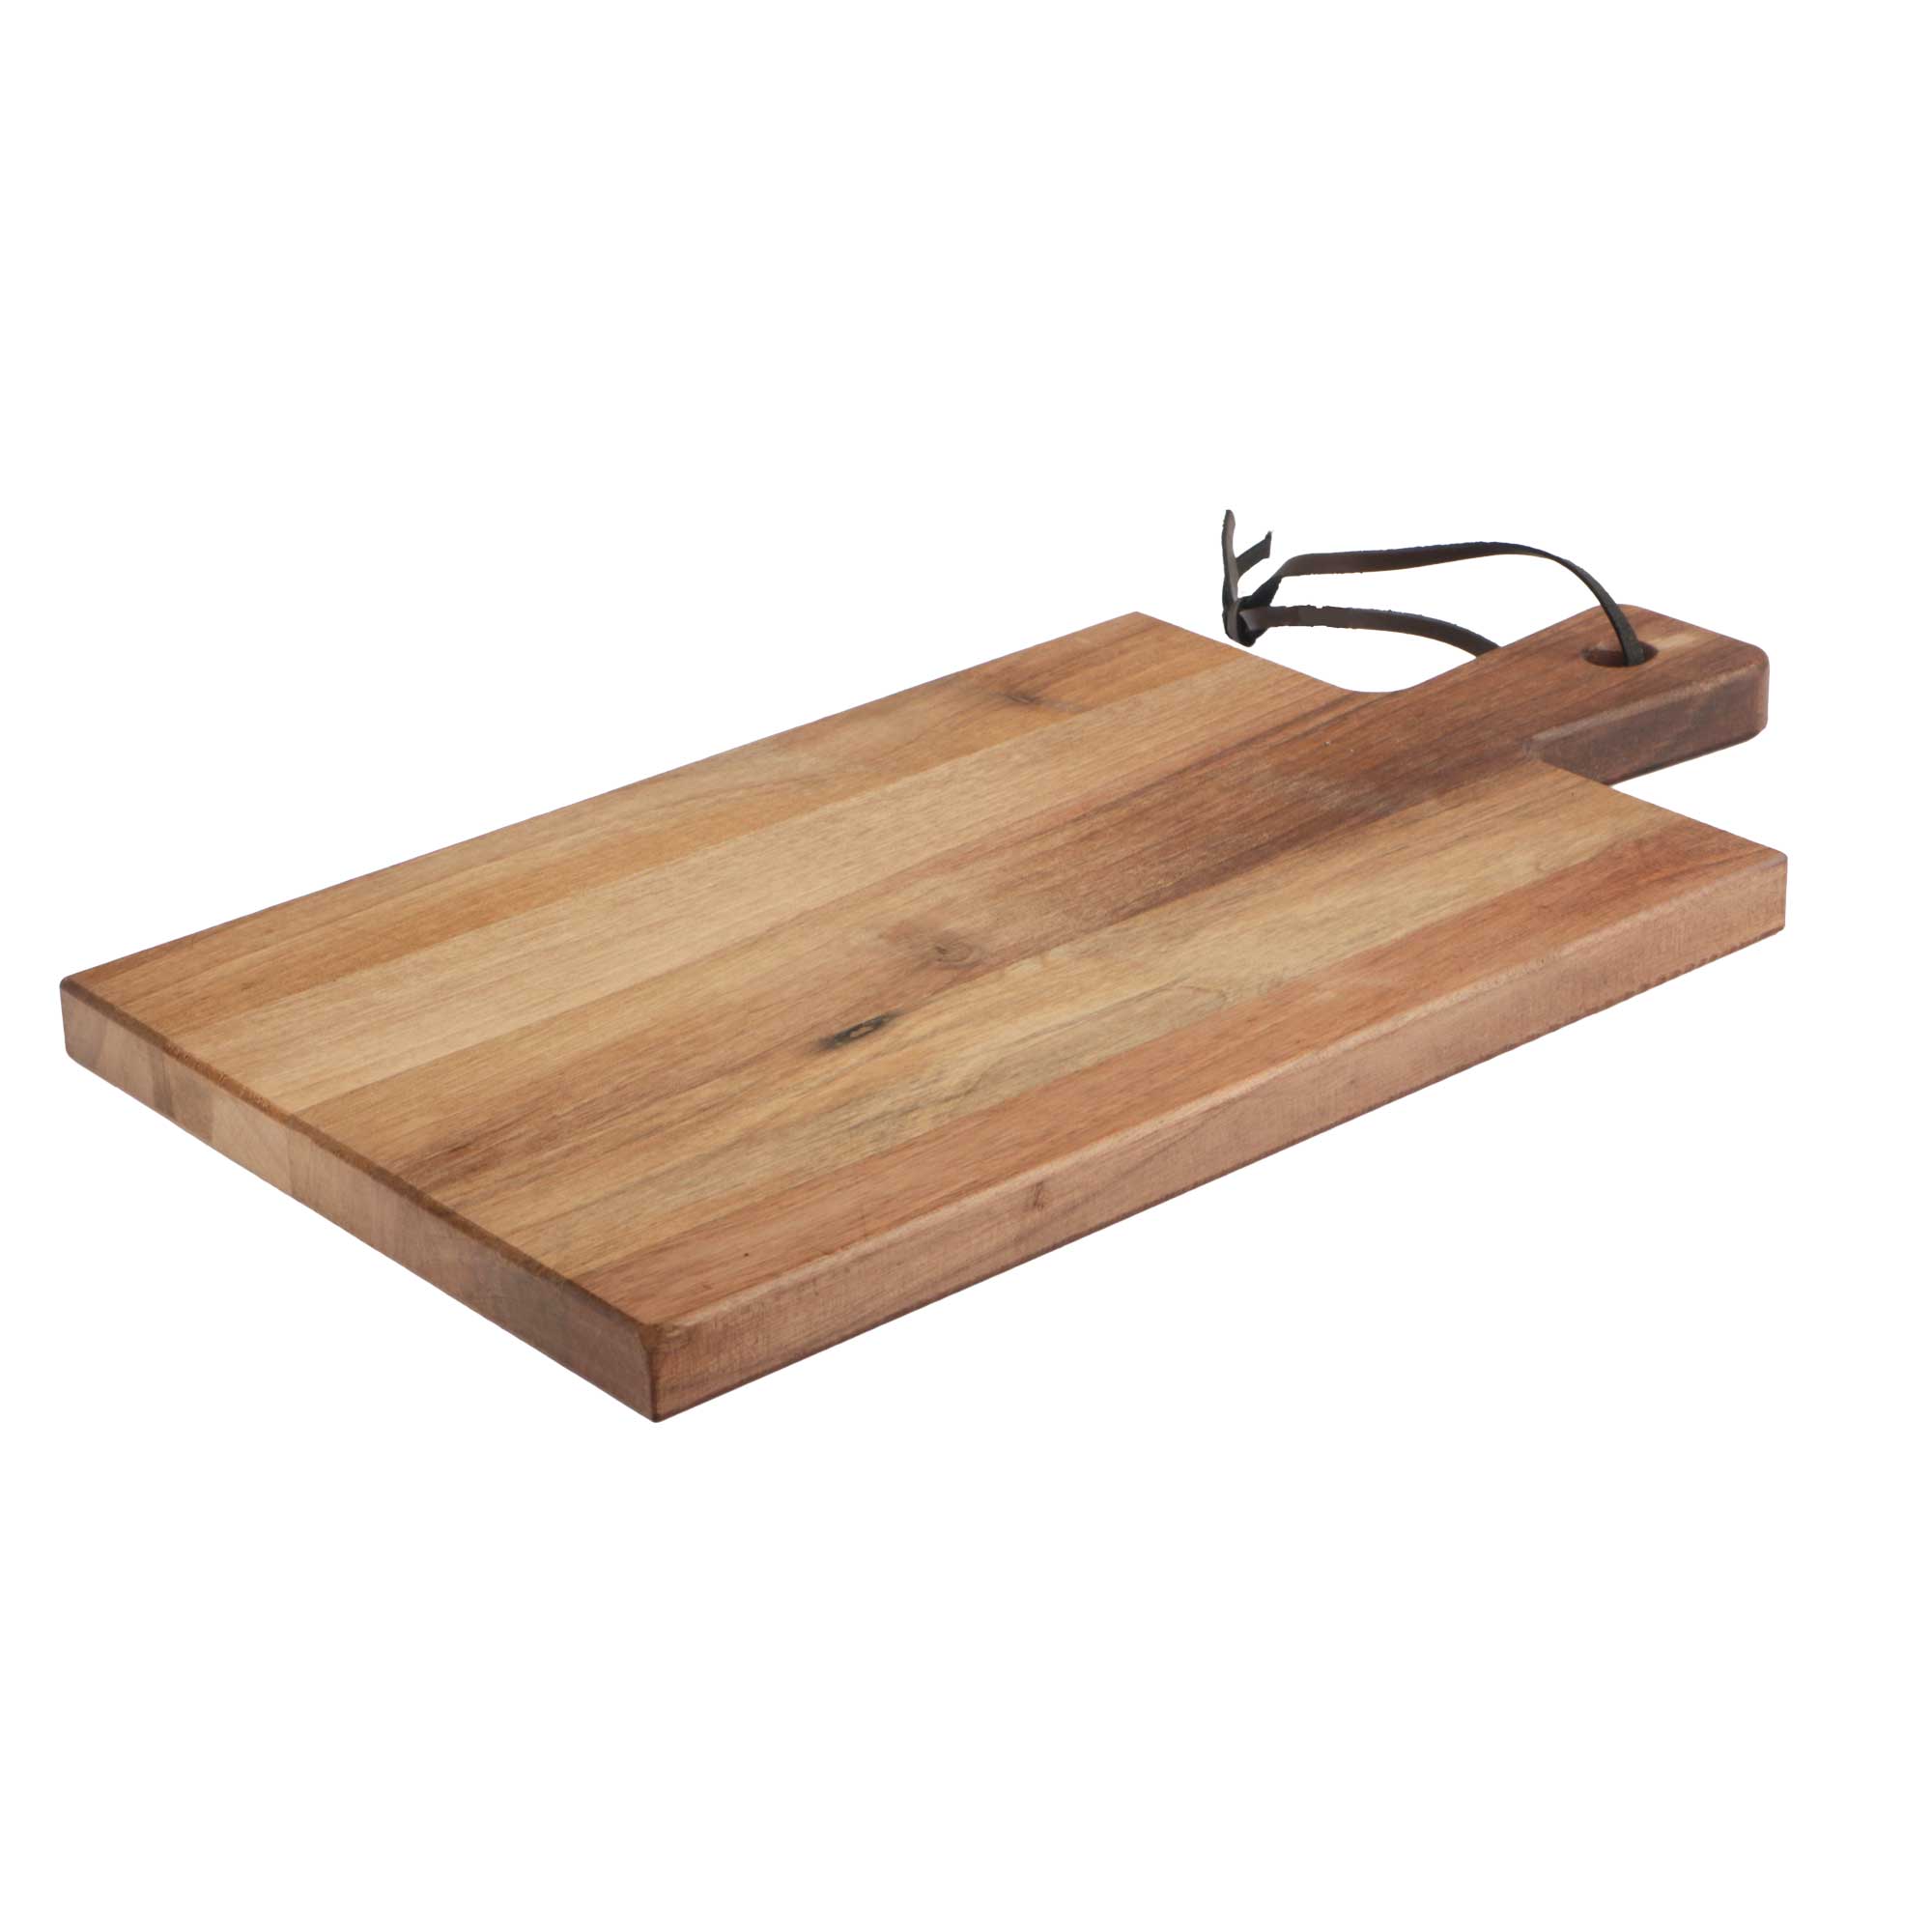 Picture of Walnoot houten plank 38x20x2 cm deluxe met greep